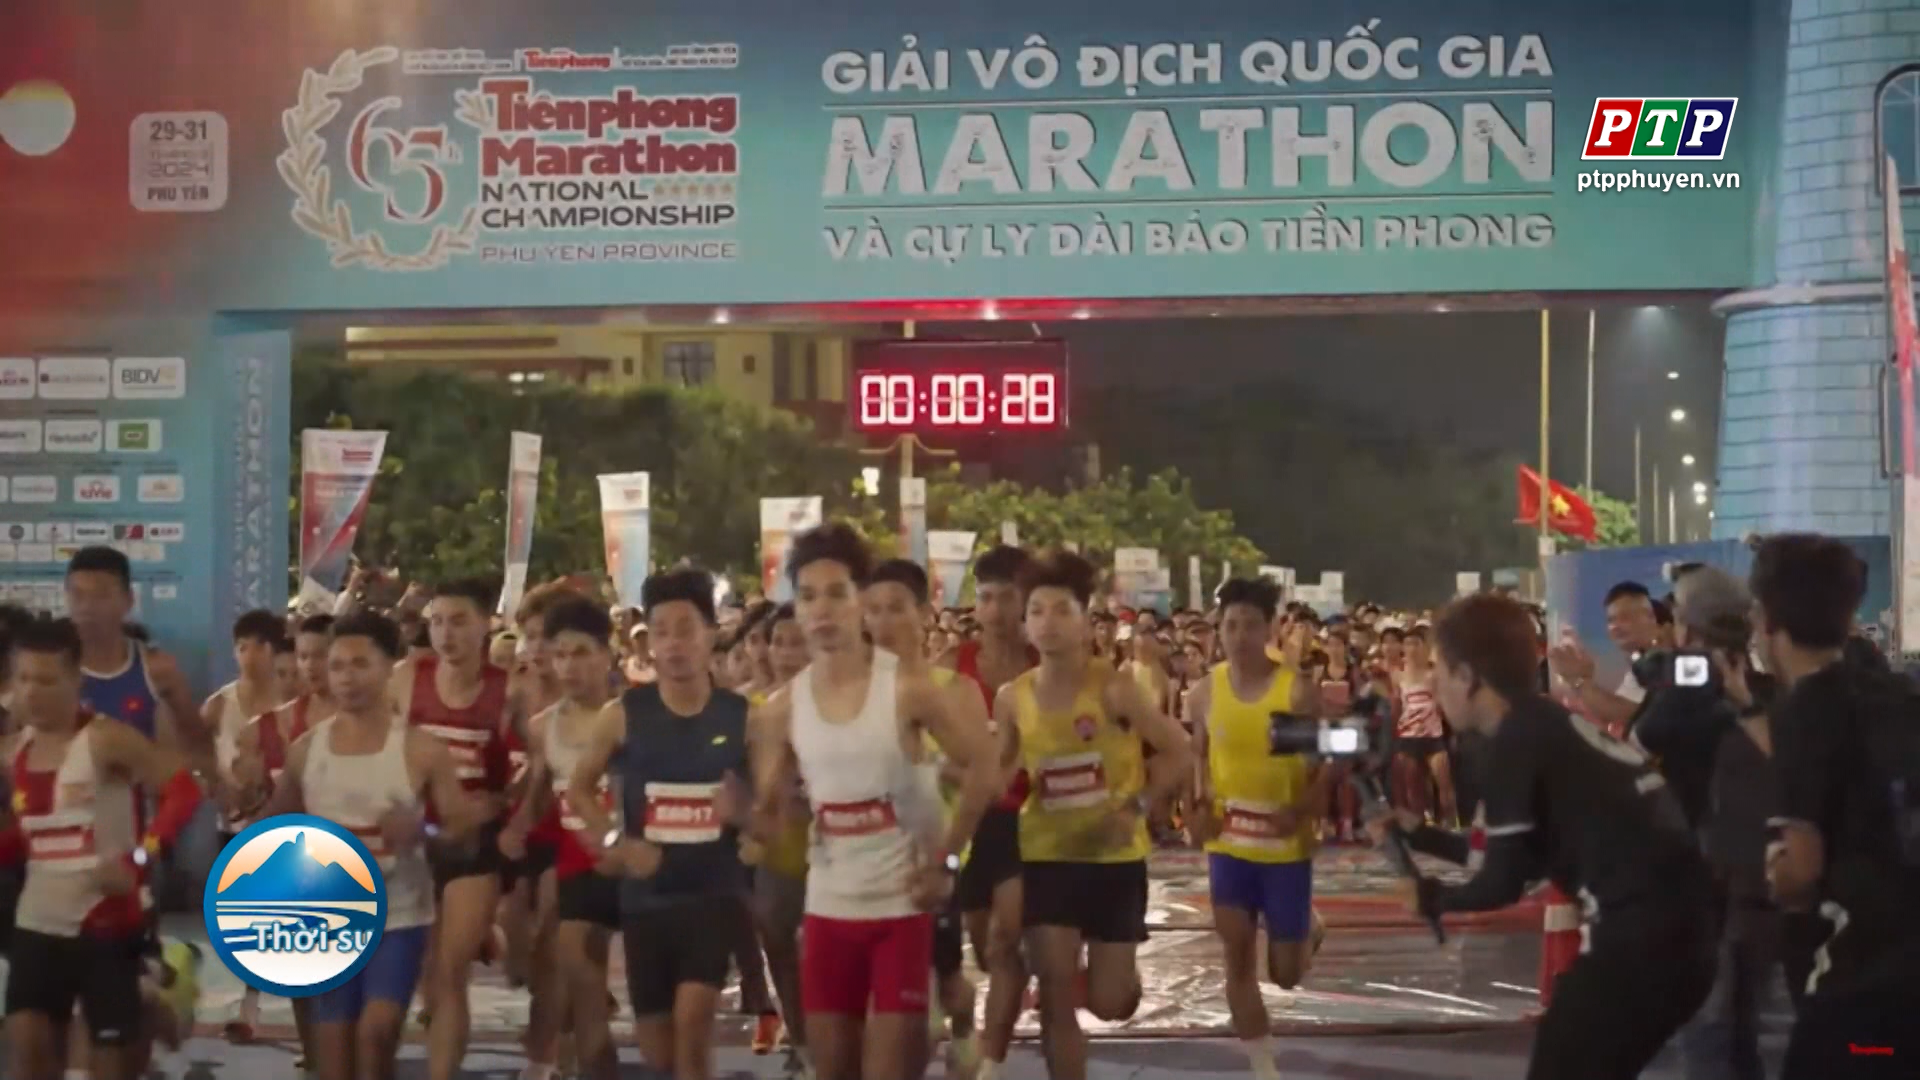 Khai mạc Giải Vô địch Quốc gia Marathon và cự ly dài báo Tiền Phong lần thứ 65 - năm 2024